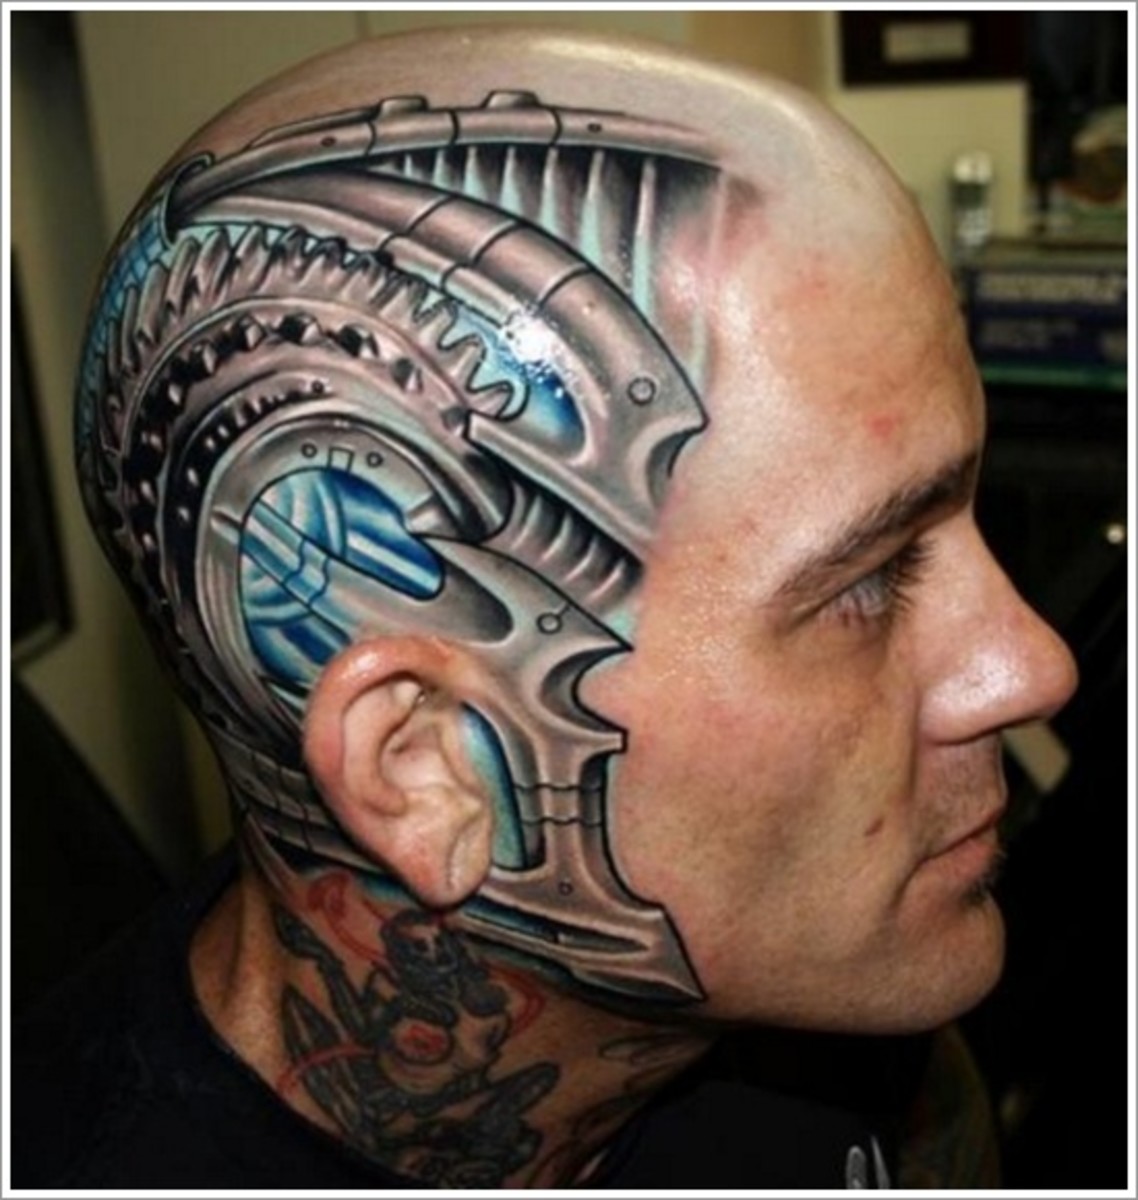 tetoválás, tetoválóművész, tetoválásötlet, tetoválás ihlet, tetoválás tervezés, fej tetoválás, tintával, inkedmag